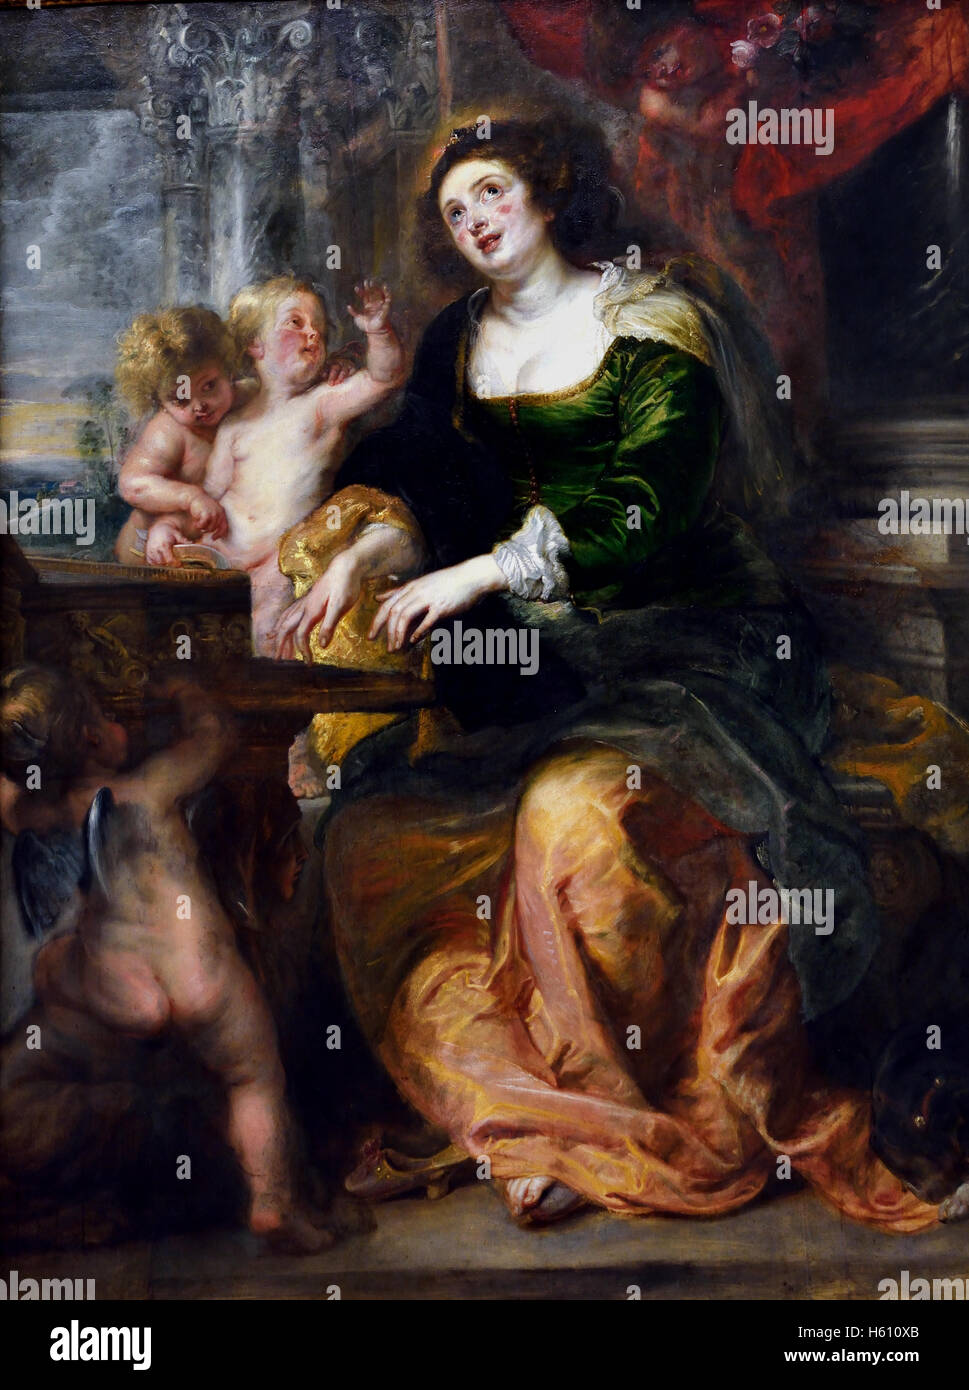 La Sainte Cécile 1639 par Peter Paul Rubens (1577-1640) Belgique belge flamande Banque D'Images